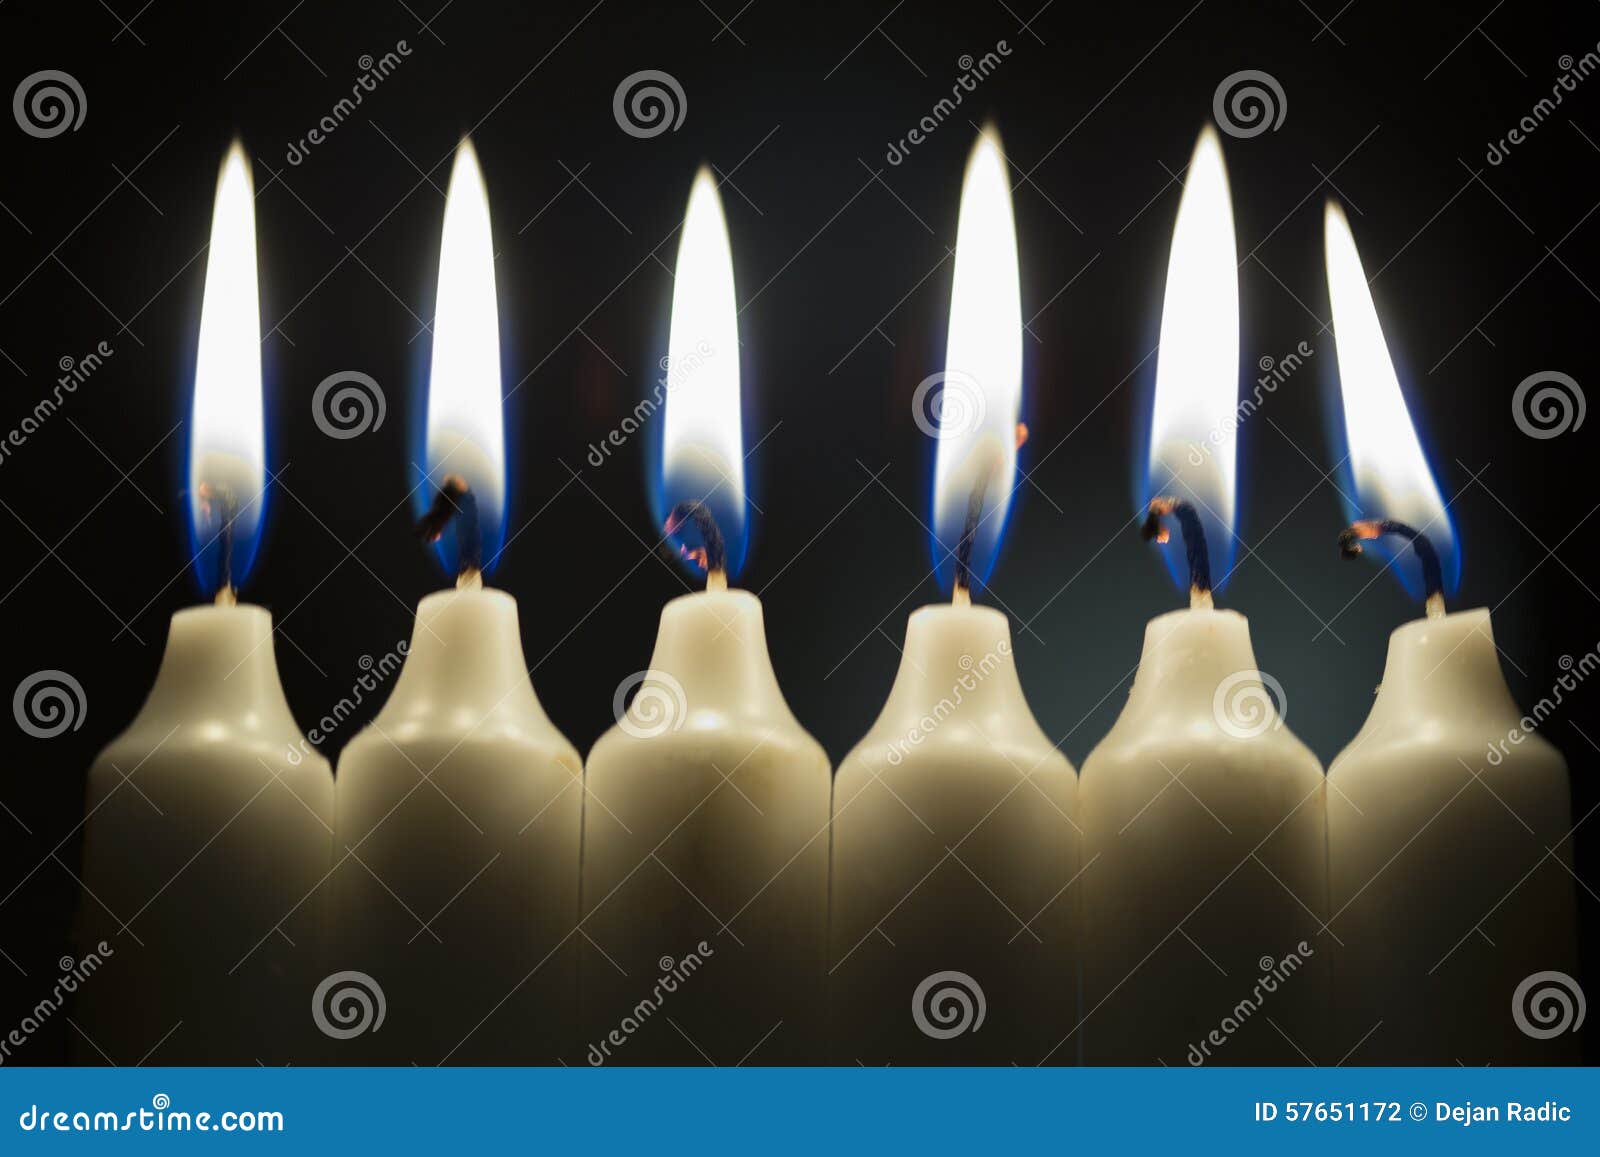 Свечи 6 месяцев. Свечка 6. Фото 6 свечей. Шестерка из свечек. Roman Candle 6 shots foto.